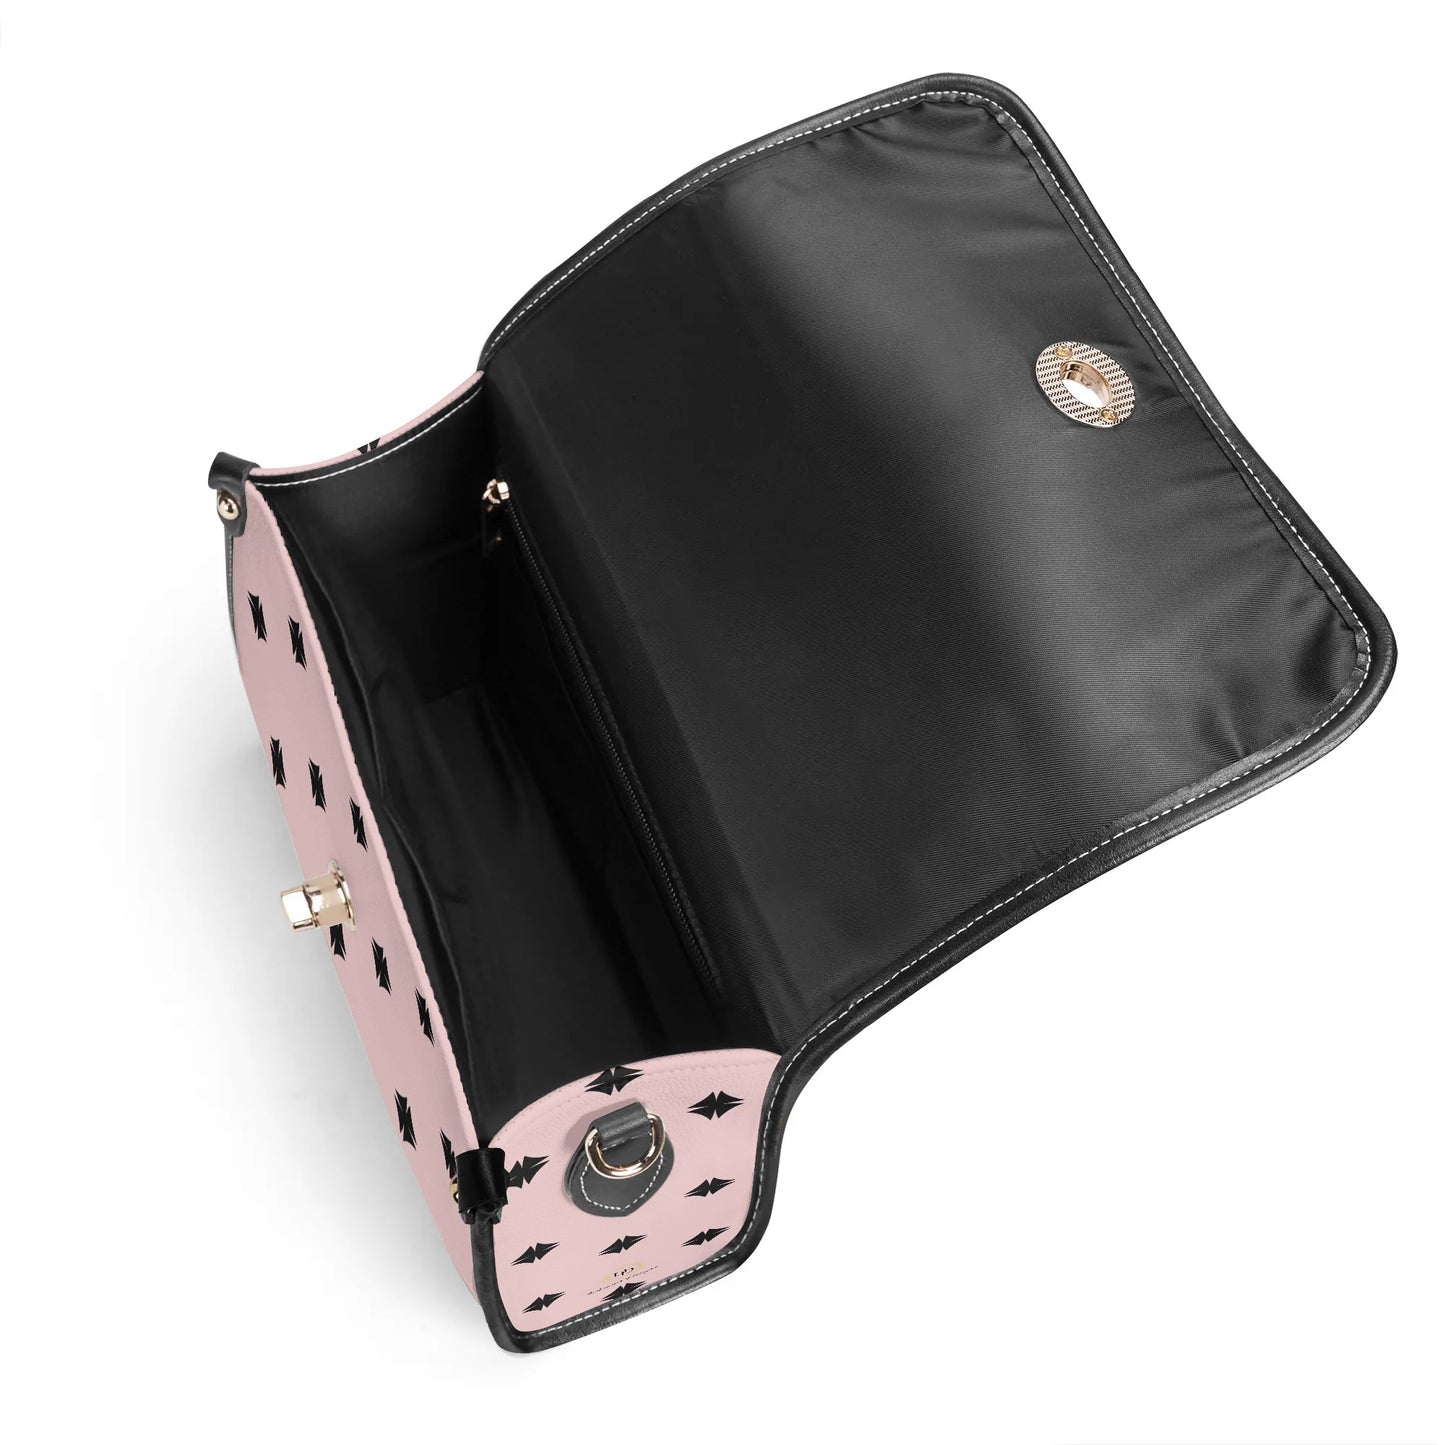 Pink Patterned Leather Satchel Bag